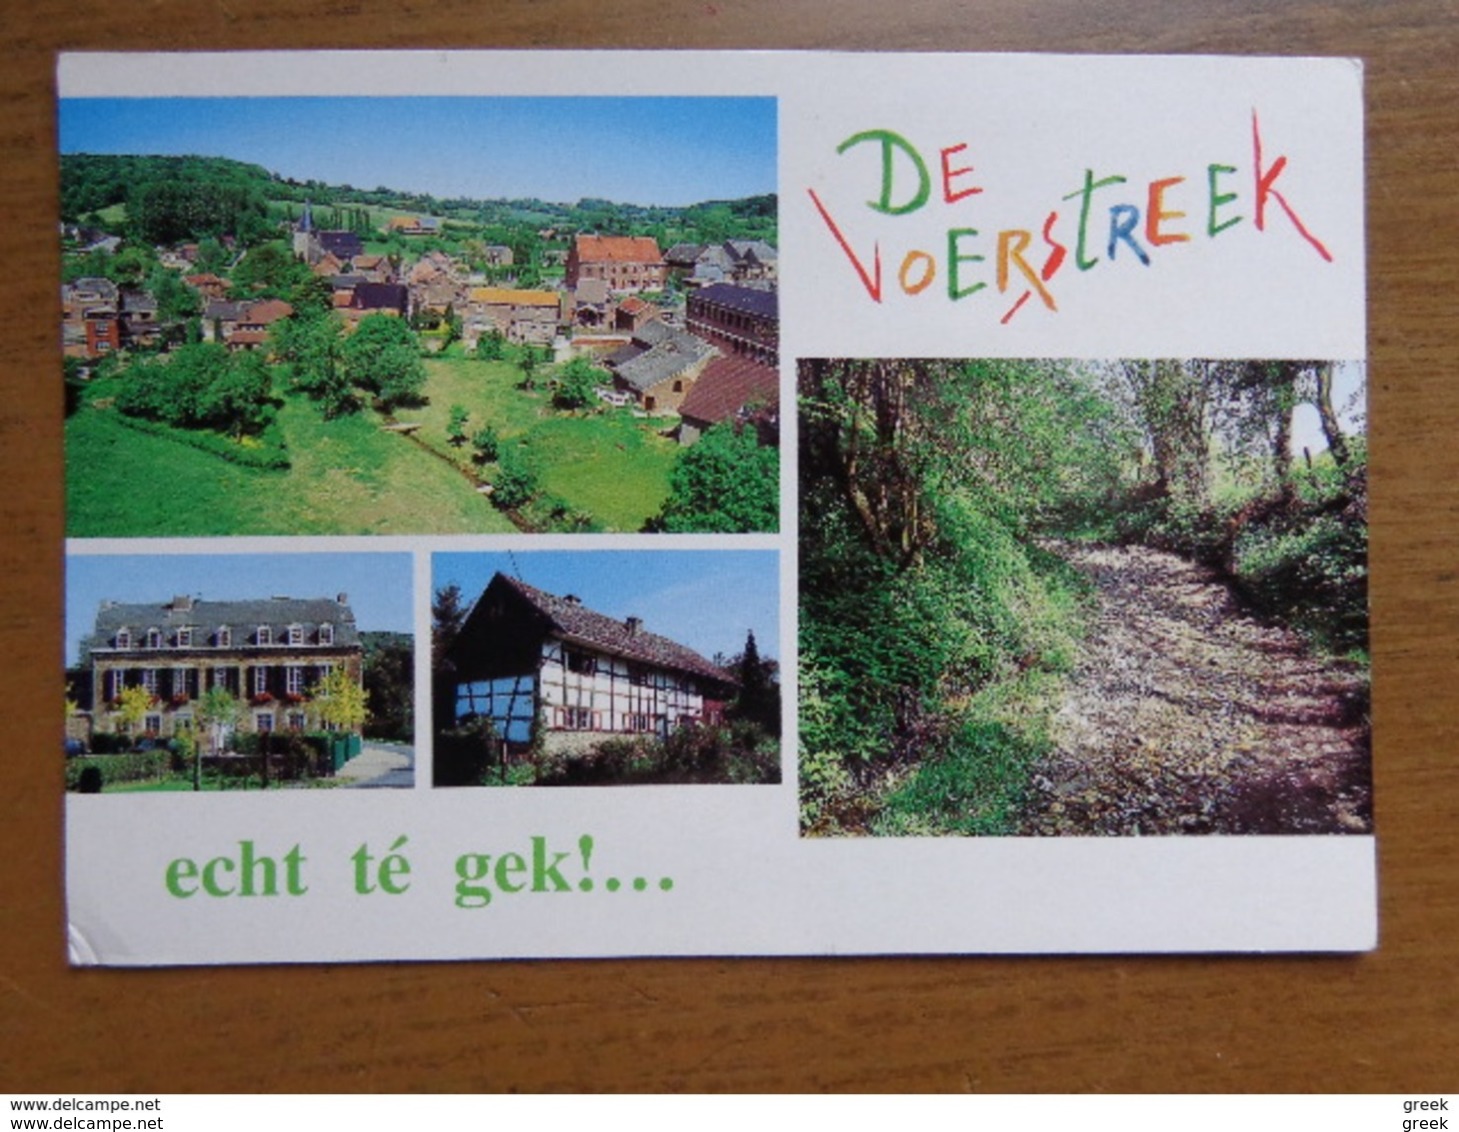 Doos postkaarten (3kg190): Alllerlei landen en thema's (zie enkele foto's)